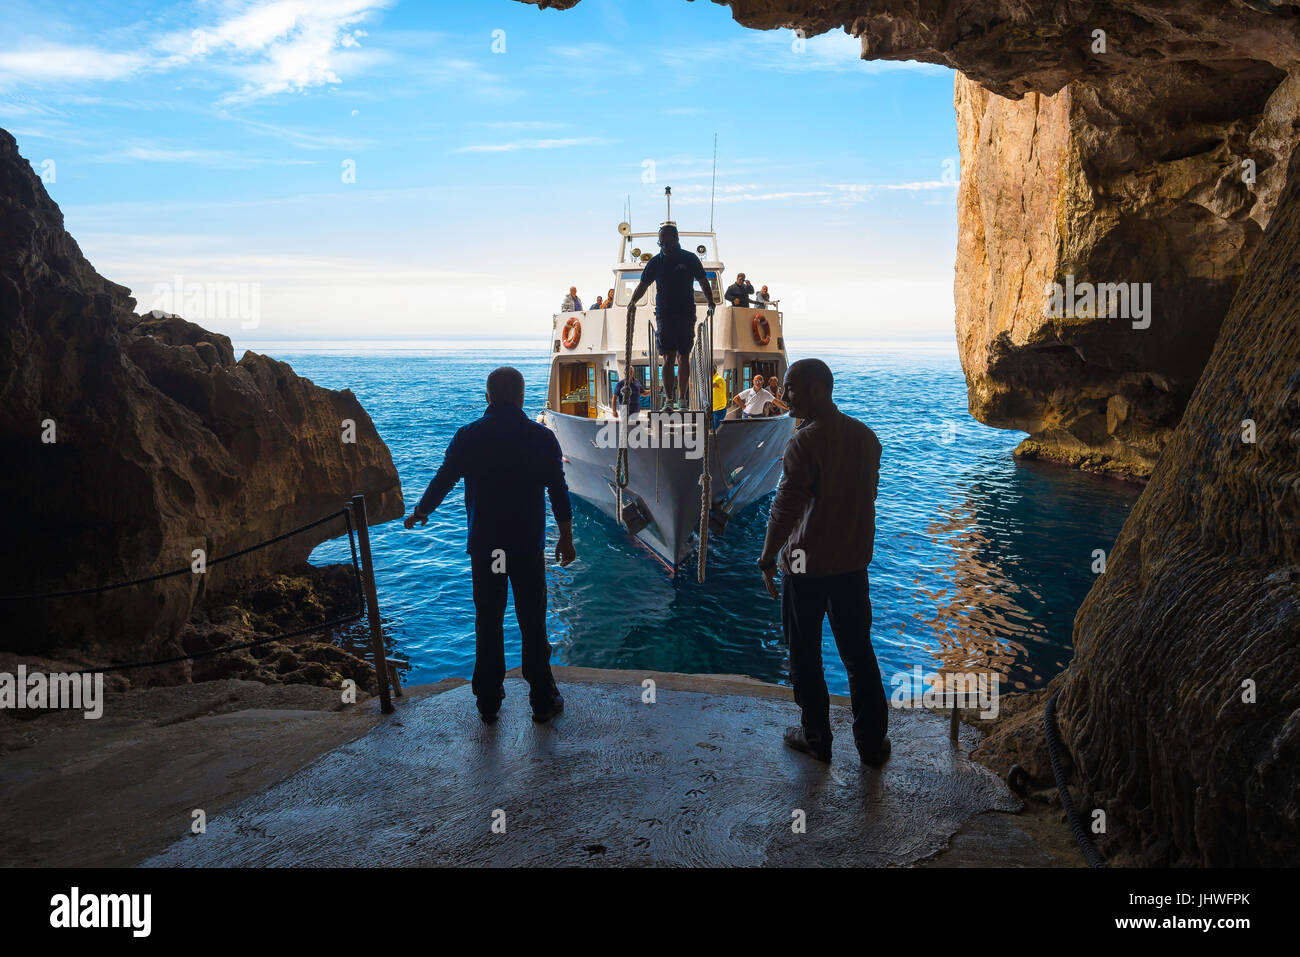 Sardinien Küste Tourismus, bereiten zwei Männer auf einer Tour Bootsanlegestelle die Grotta di Nettuno am Capo Caccia in der Nähe von Alghero, Sardinien angekommen. Stockfoto